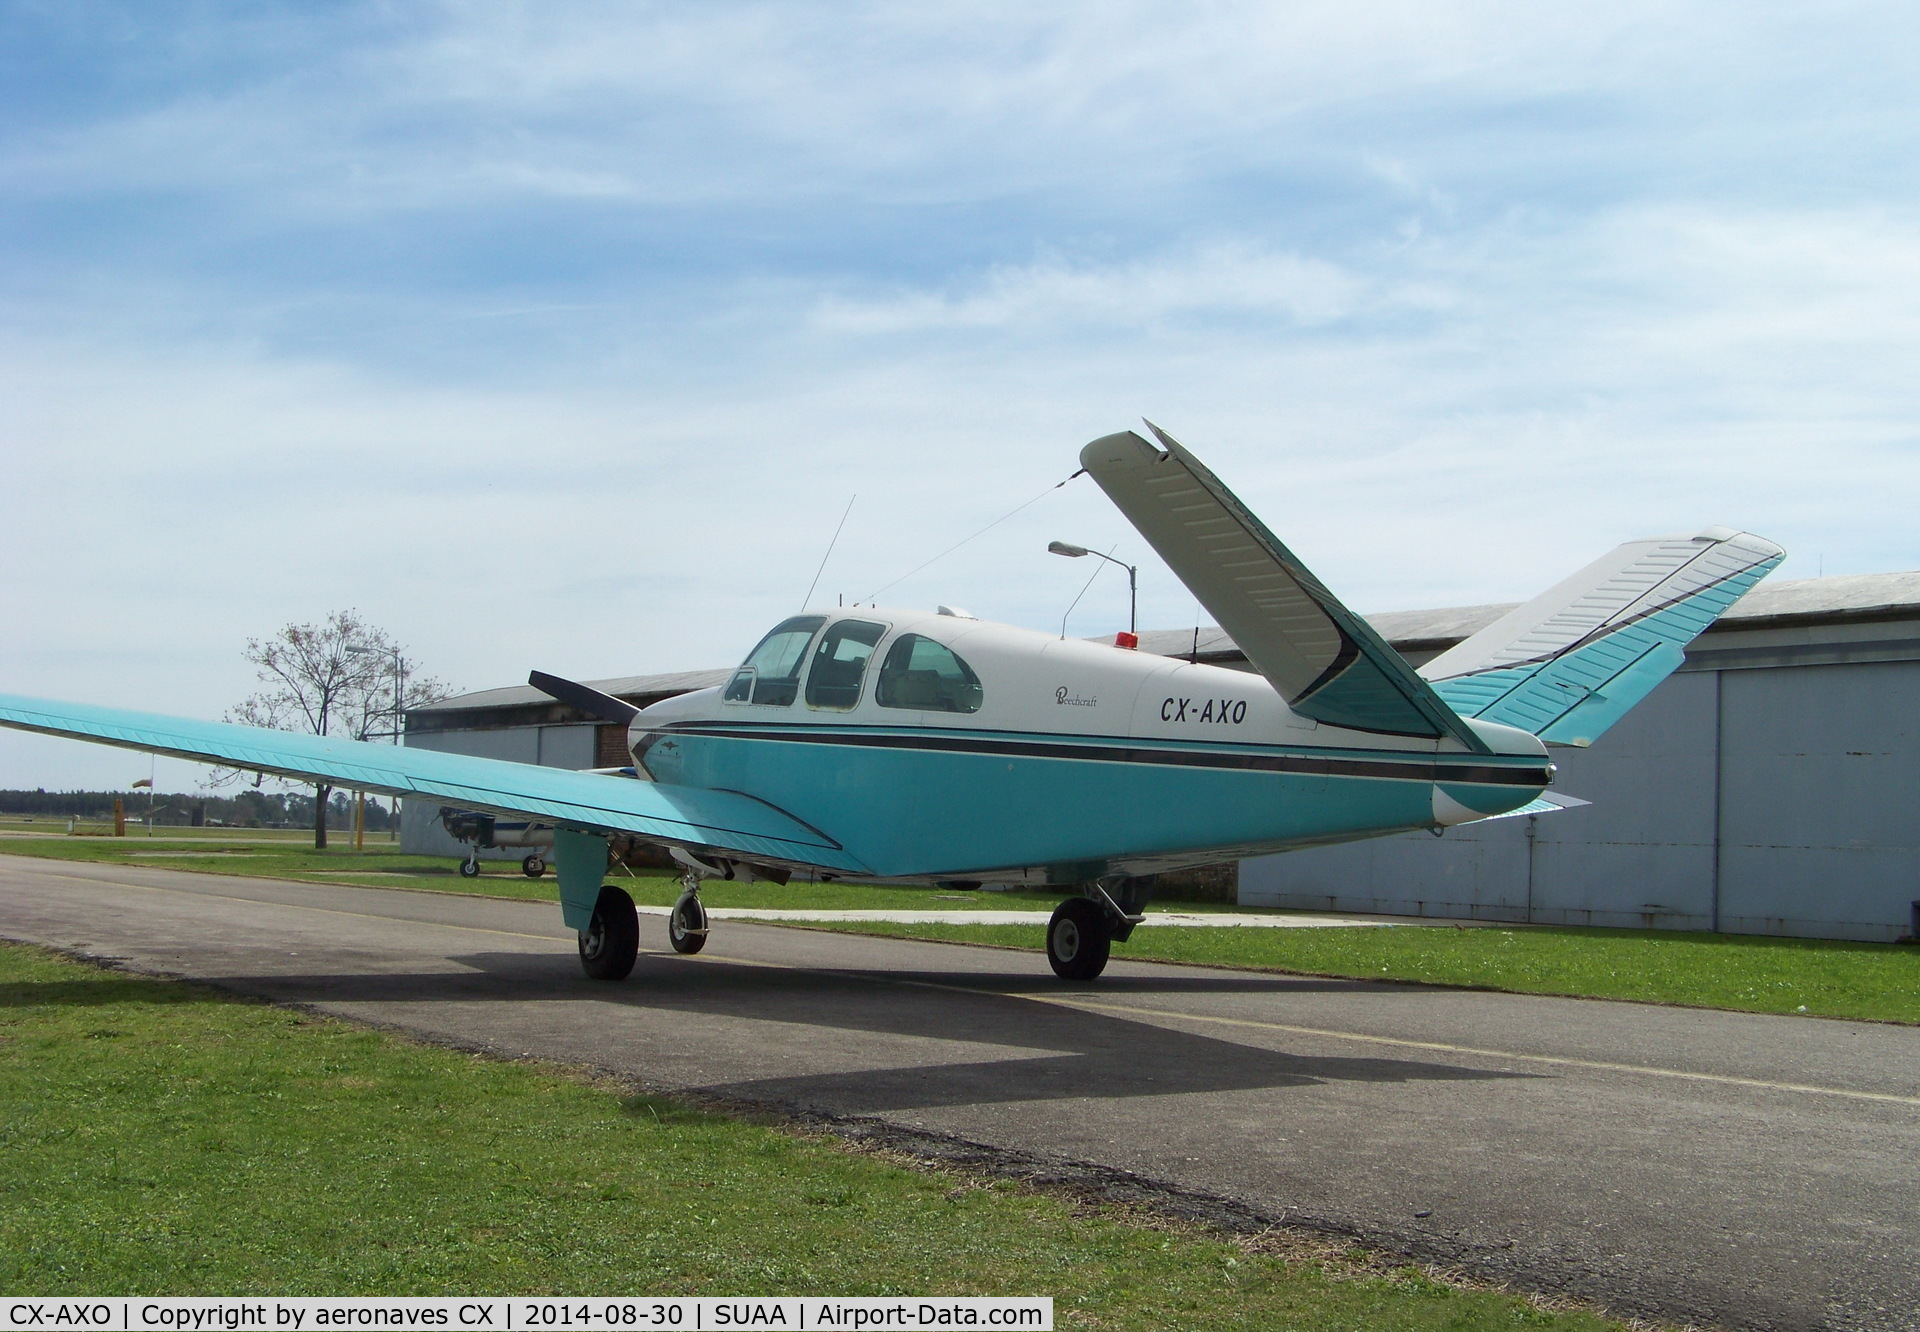 CX-AXO, Beechcraft N35 Bonanza C/N D-6655, Bonanza modelo N35, después de 15 años hangarado, hoy está en vuelo nuevamente.